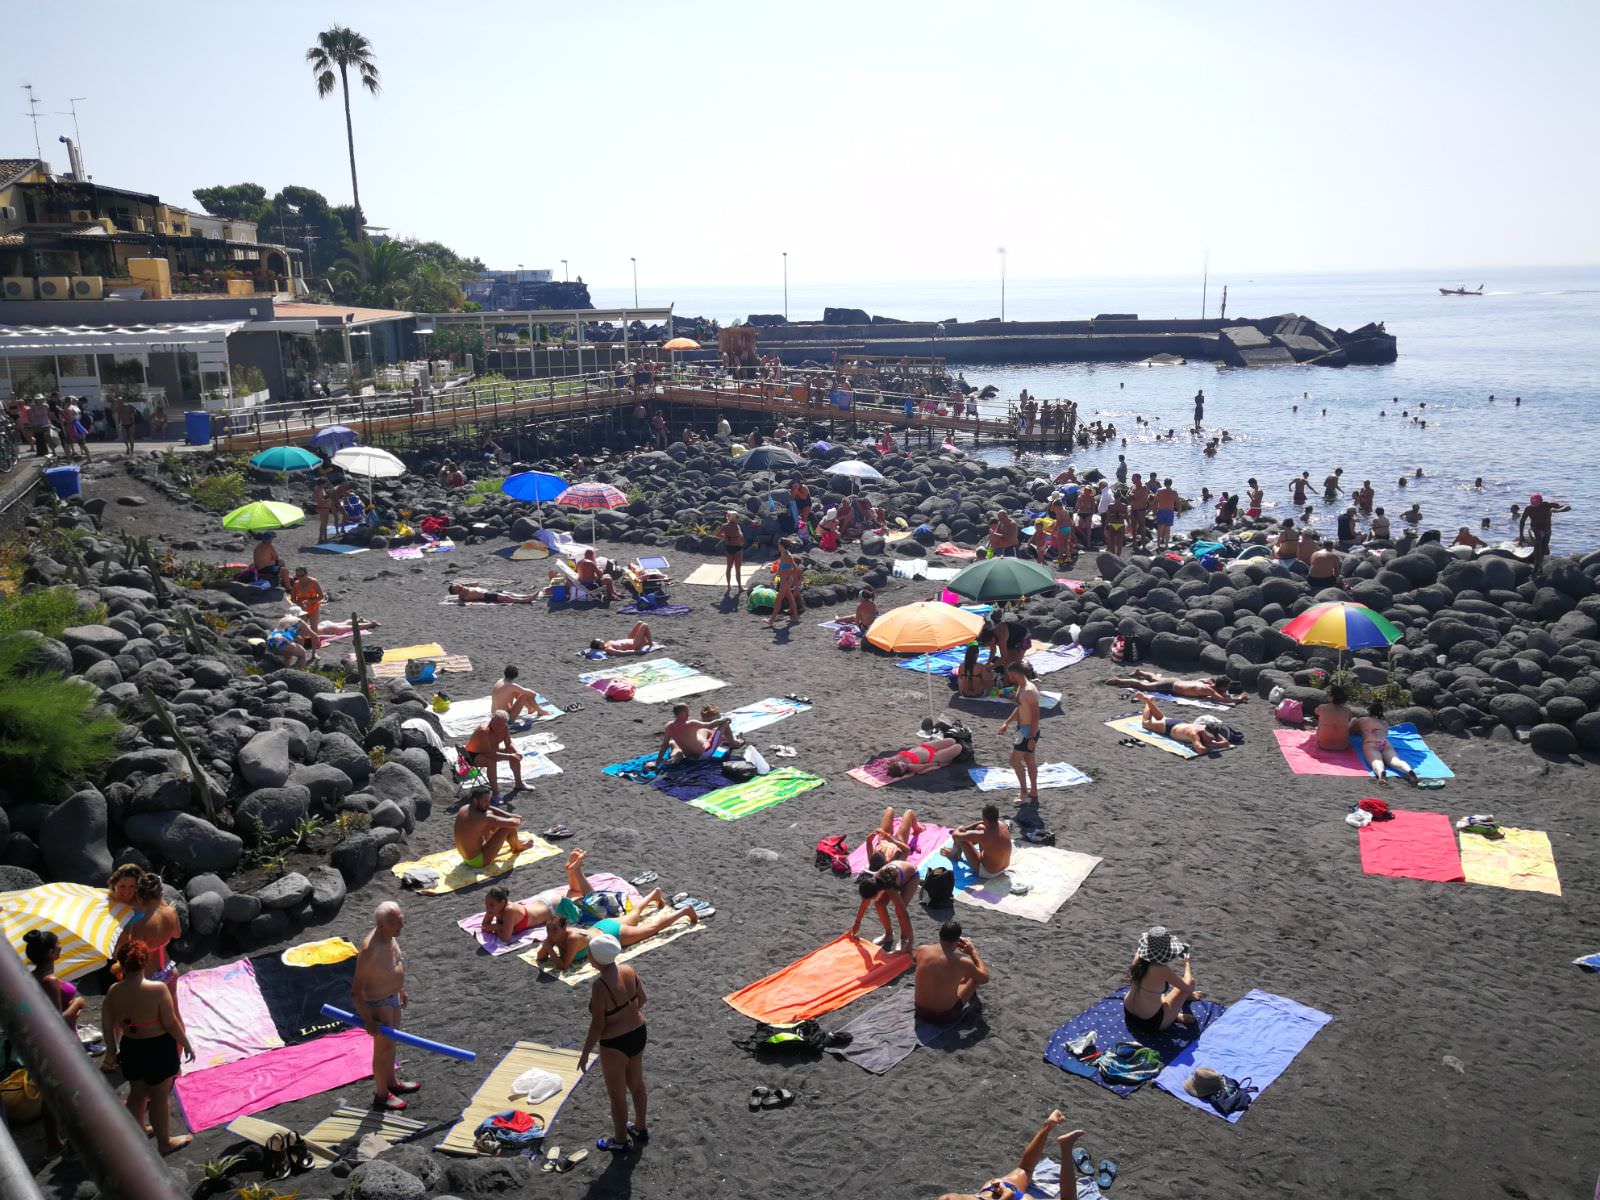 Occupazione, inquinamento e rifiuti: così le spiagge siciliane perdono prestigio